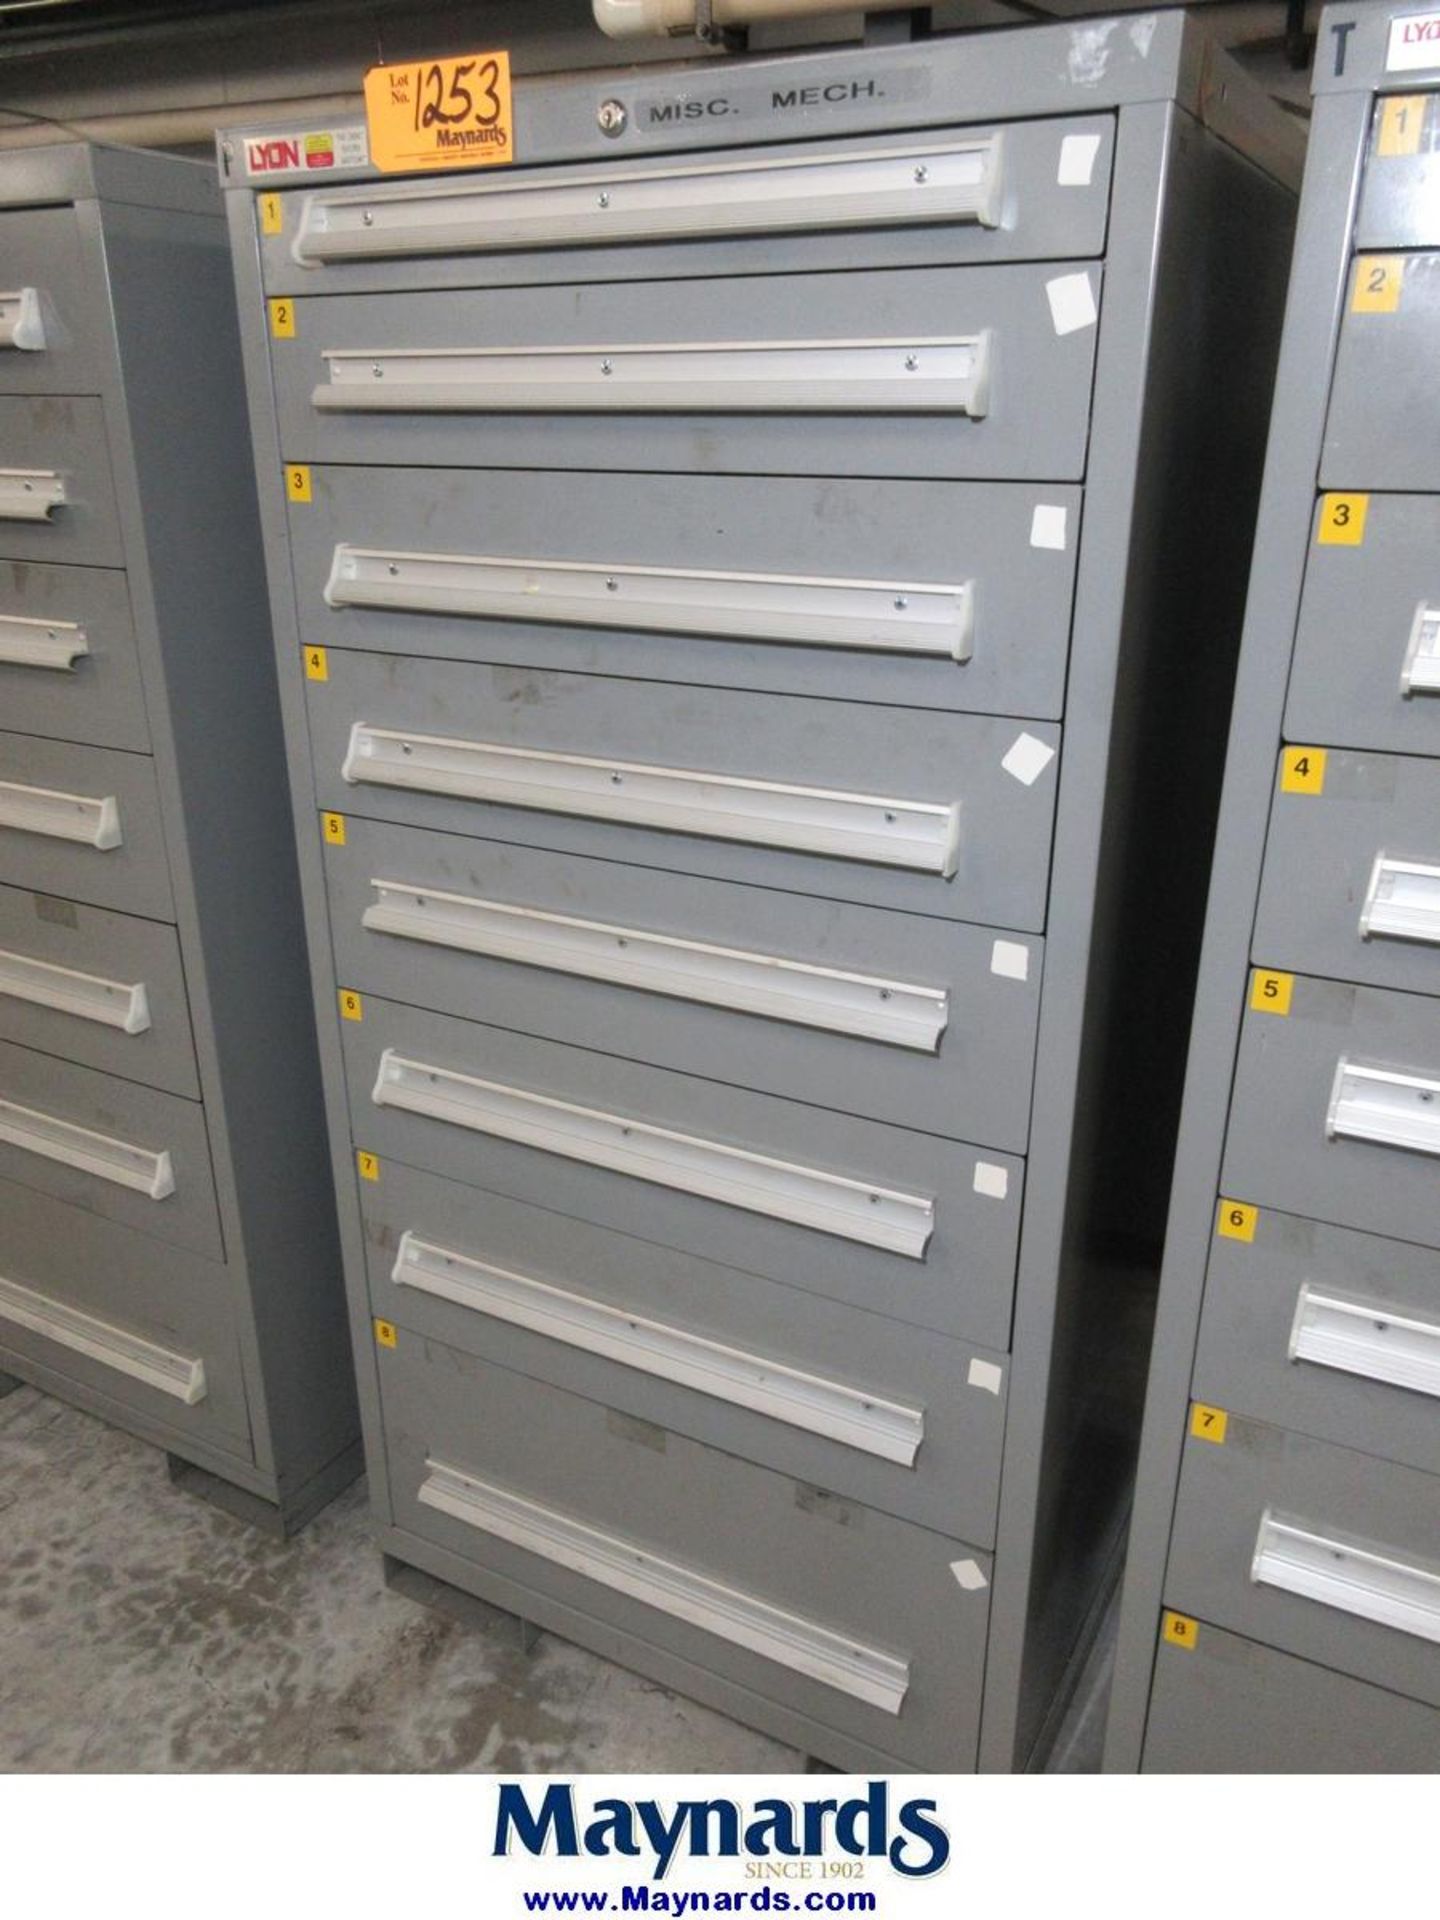 Lyon Safetylink 8-Drawer Heavy Duty Storage Cabinet